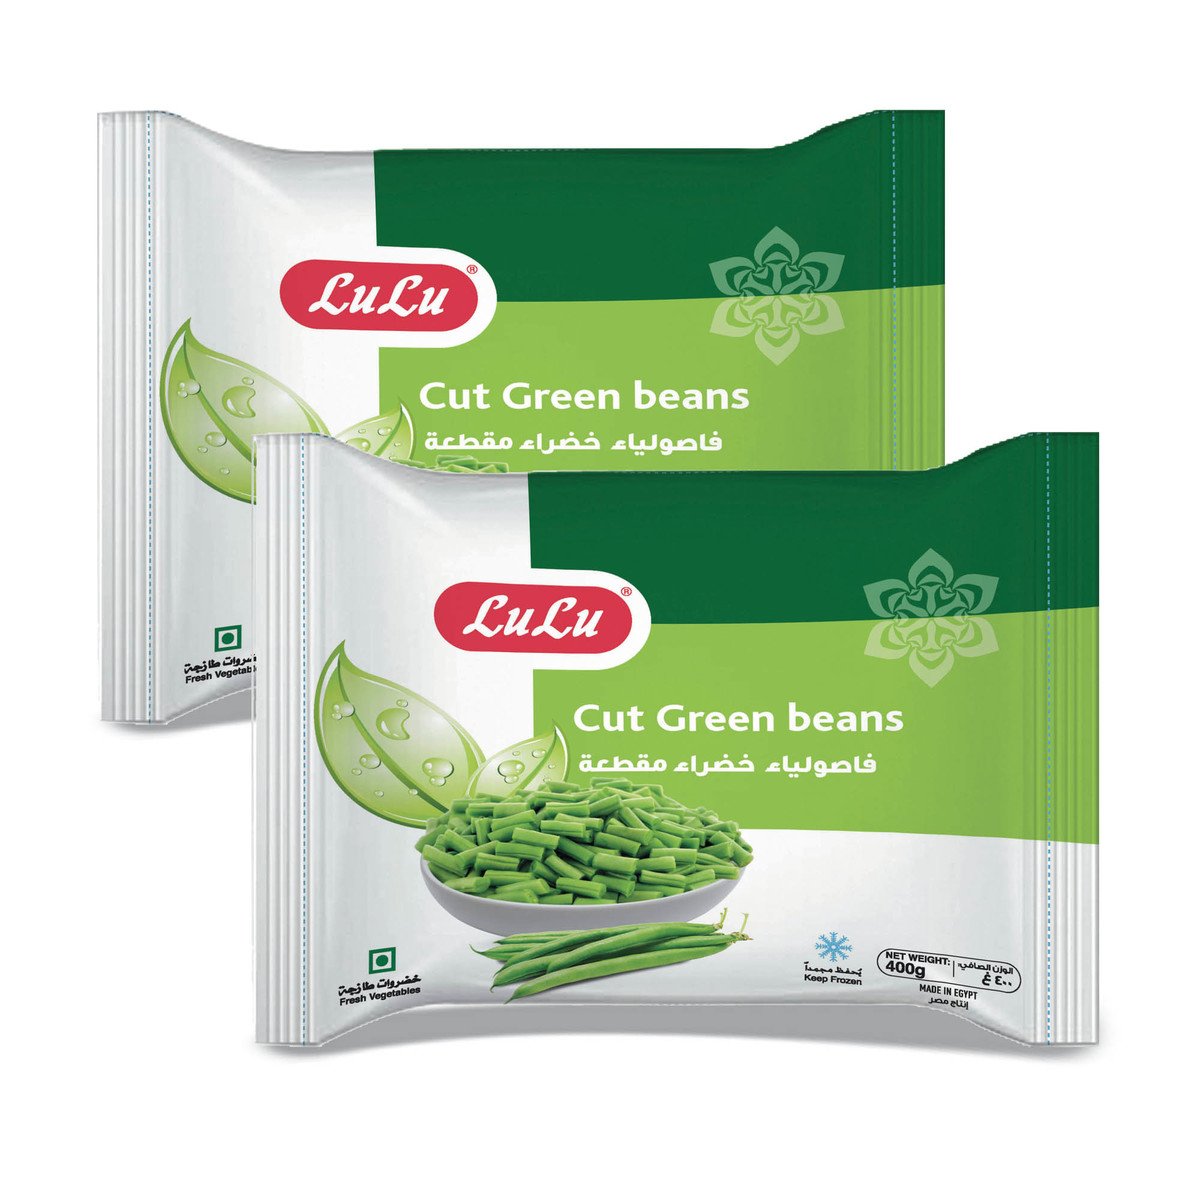 LuLu Frozen Cut Green Beans Value Pack 2 x 400 g